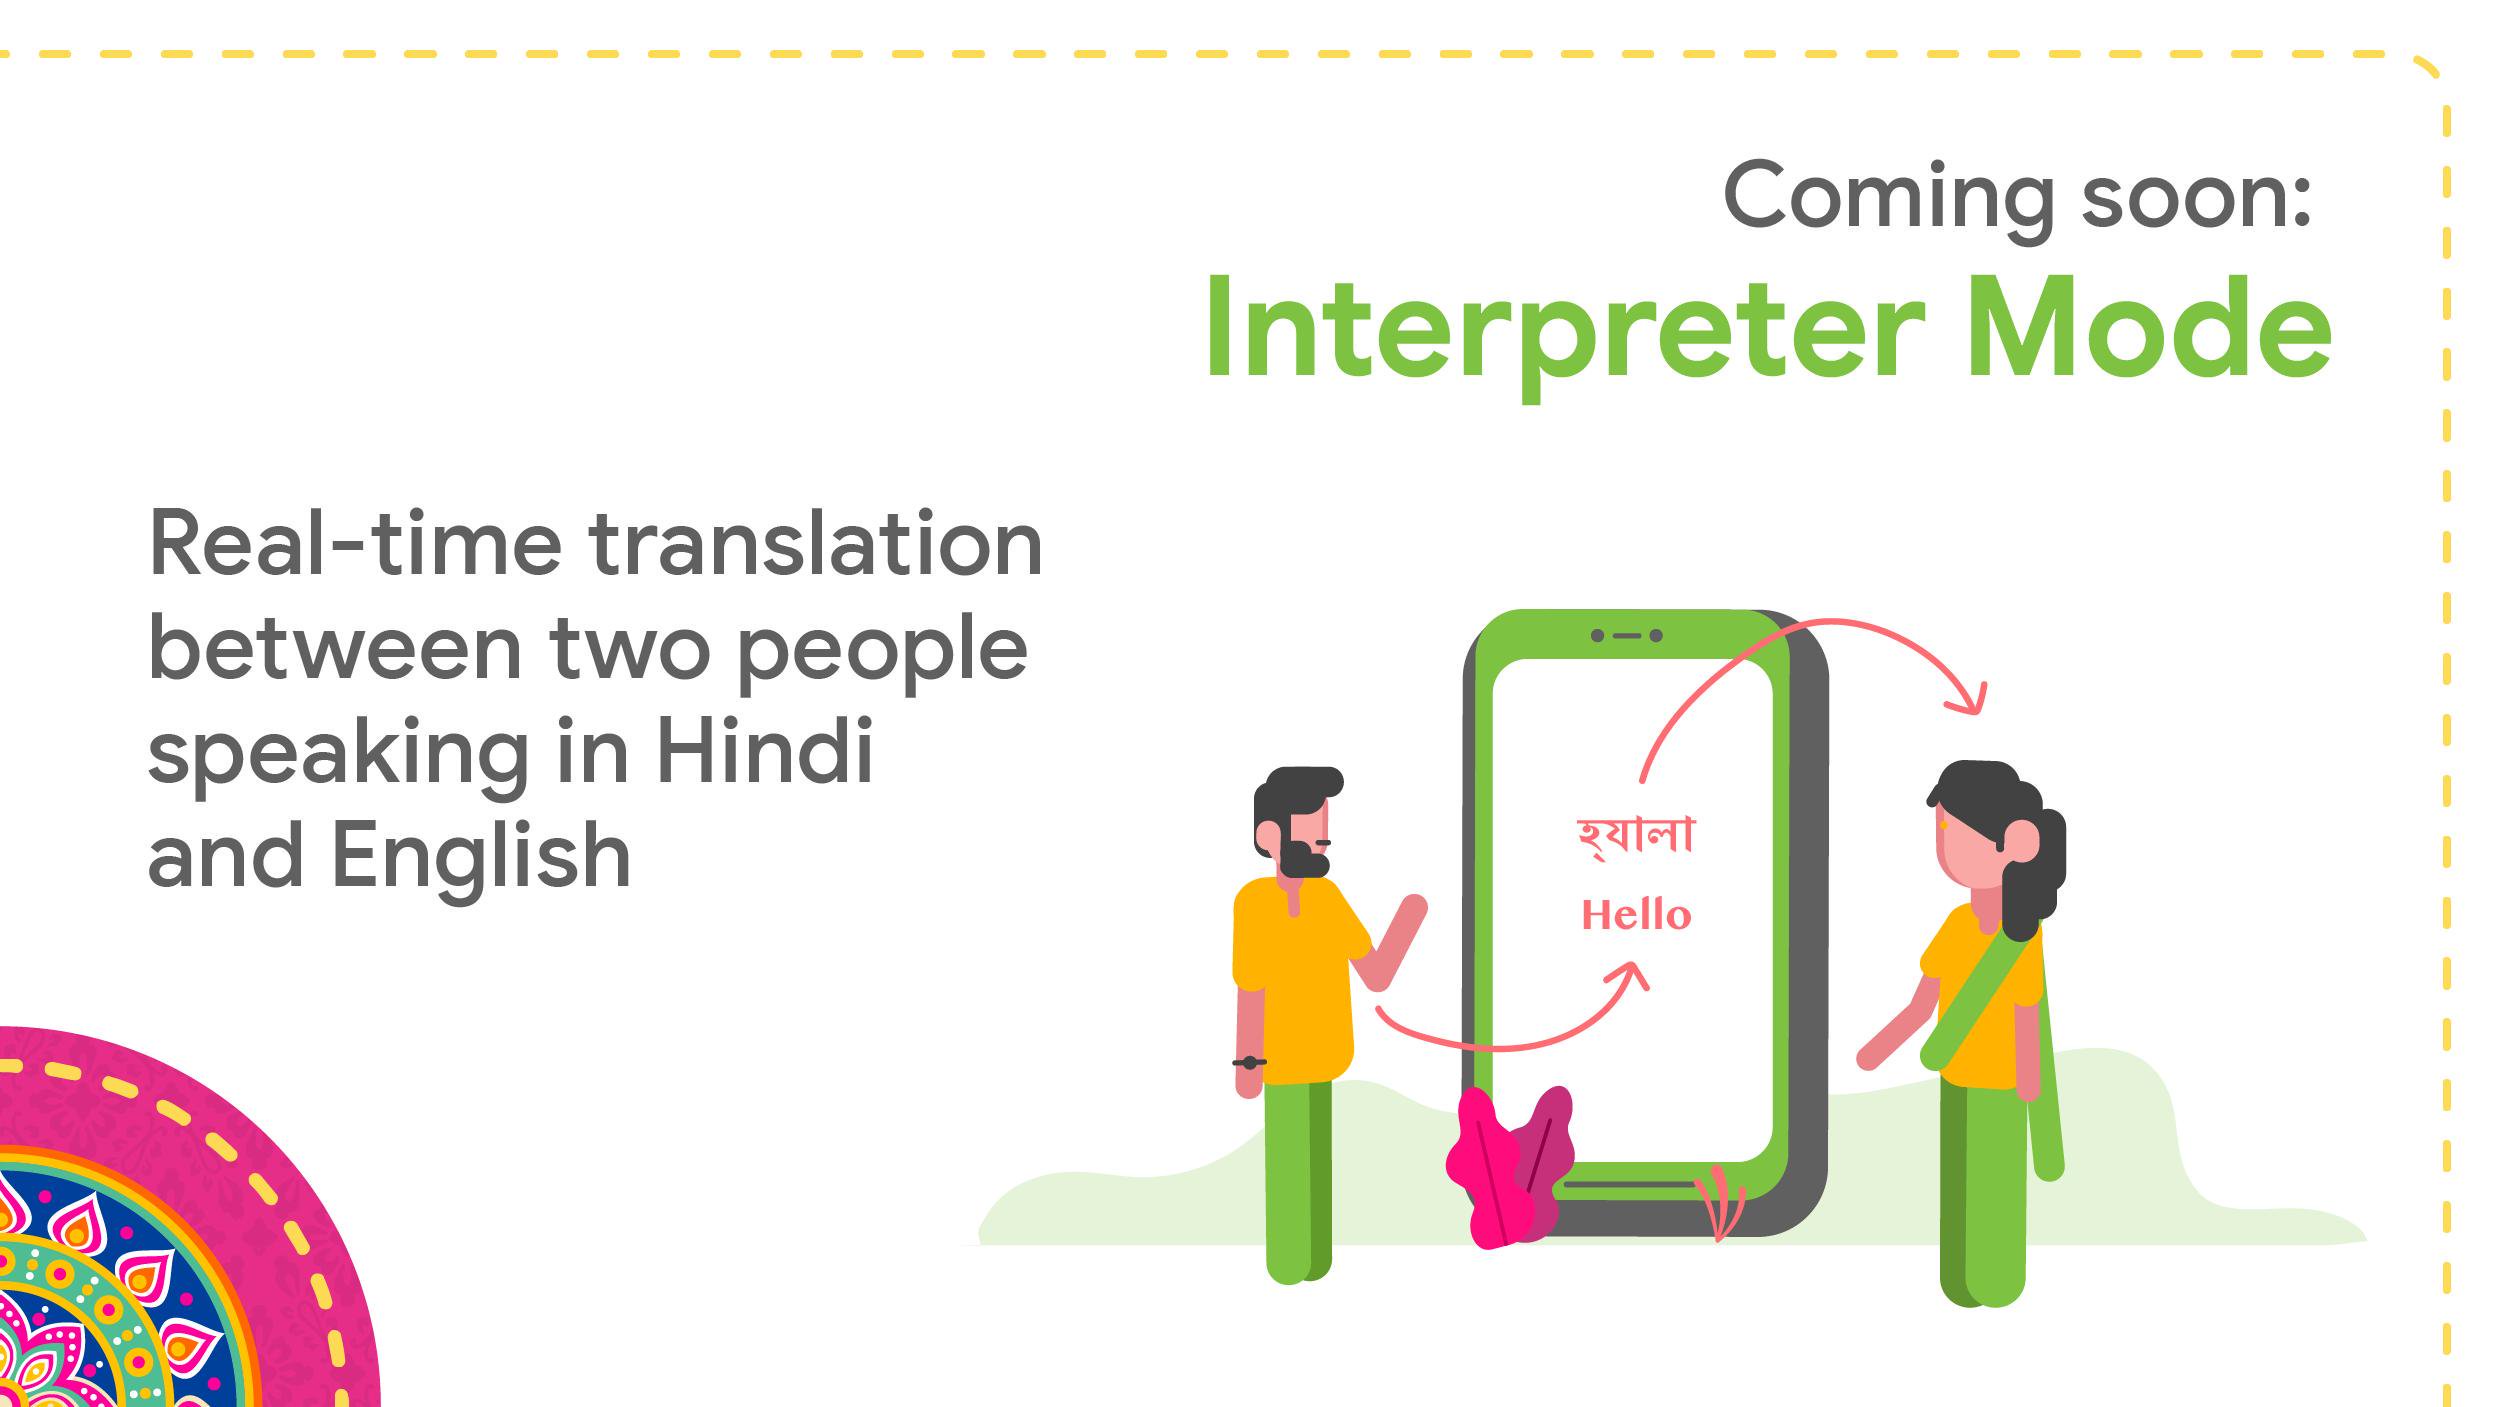 Google Assistant Sekarang Dapat Berbicara dalam Bahasa Hindi, 8 Bahasa Lainnya Sesuai Permintaan 1